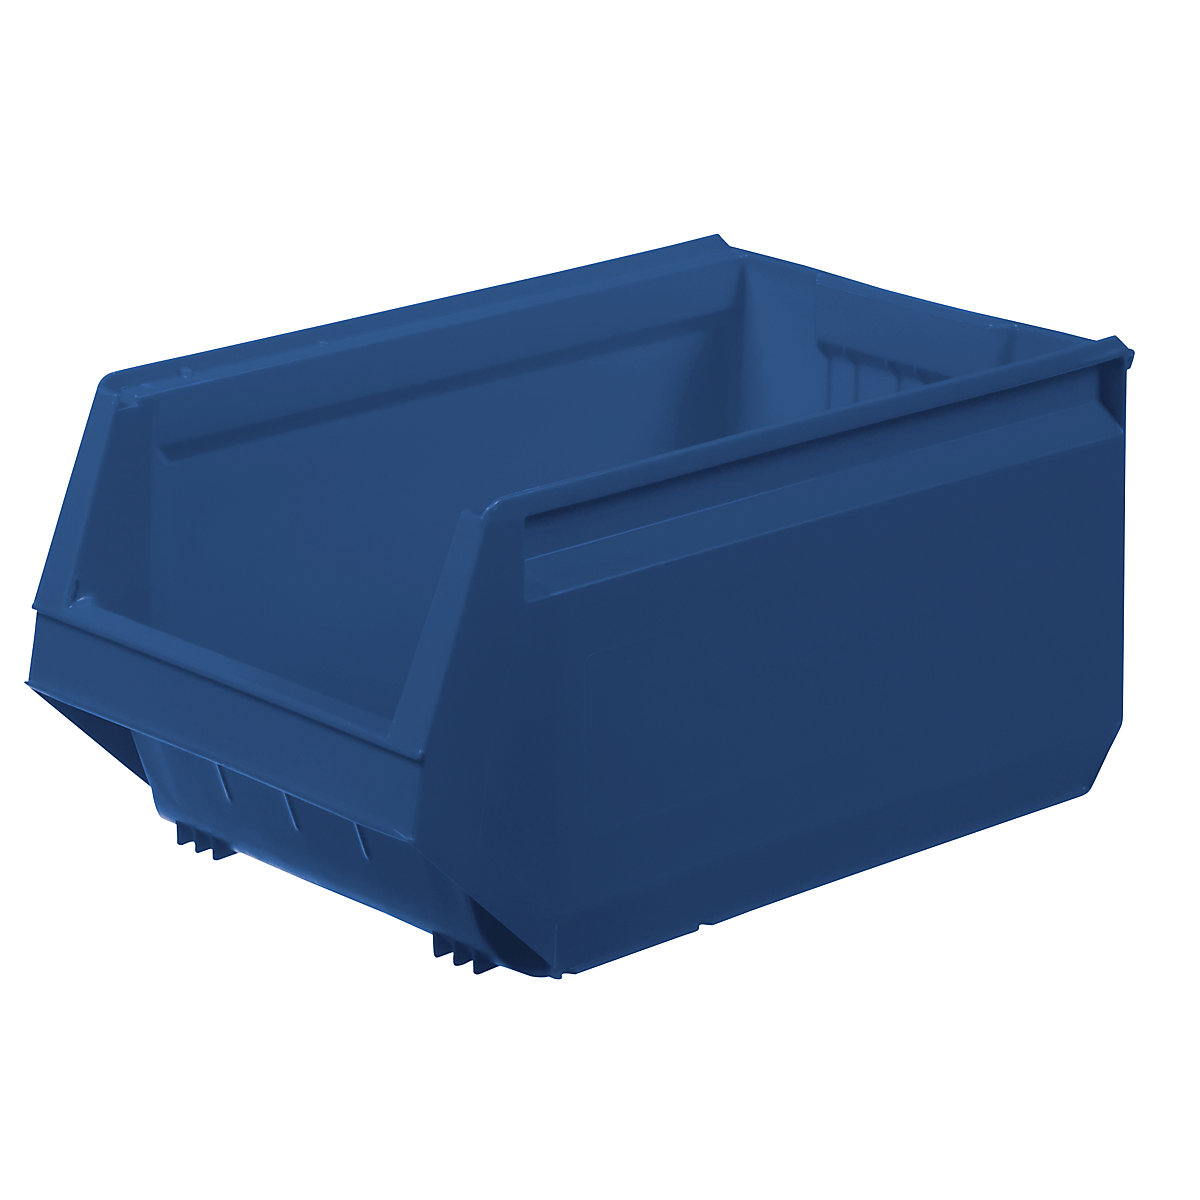 Пластиковый ящик 500х230х150мм, синий Schoeller 7000 SAS-7964000623. Ящик для склада пластиковый 5006 500х310х250мм. Ящик пластиковый диком а 500х230х150 мм, цвет синий. Пластиковый лоток 500х230х150мм.